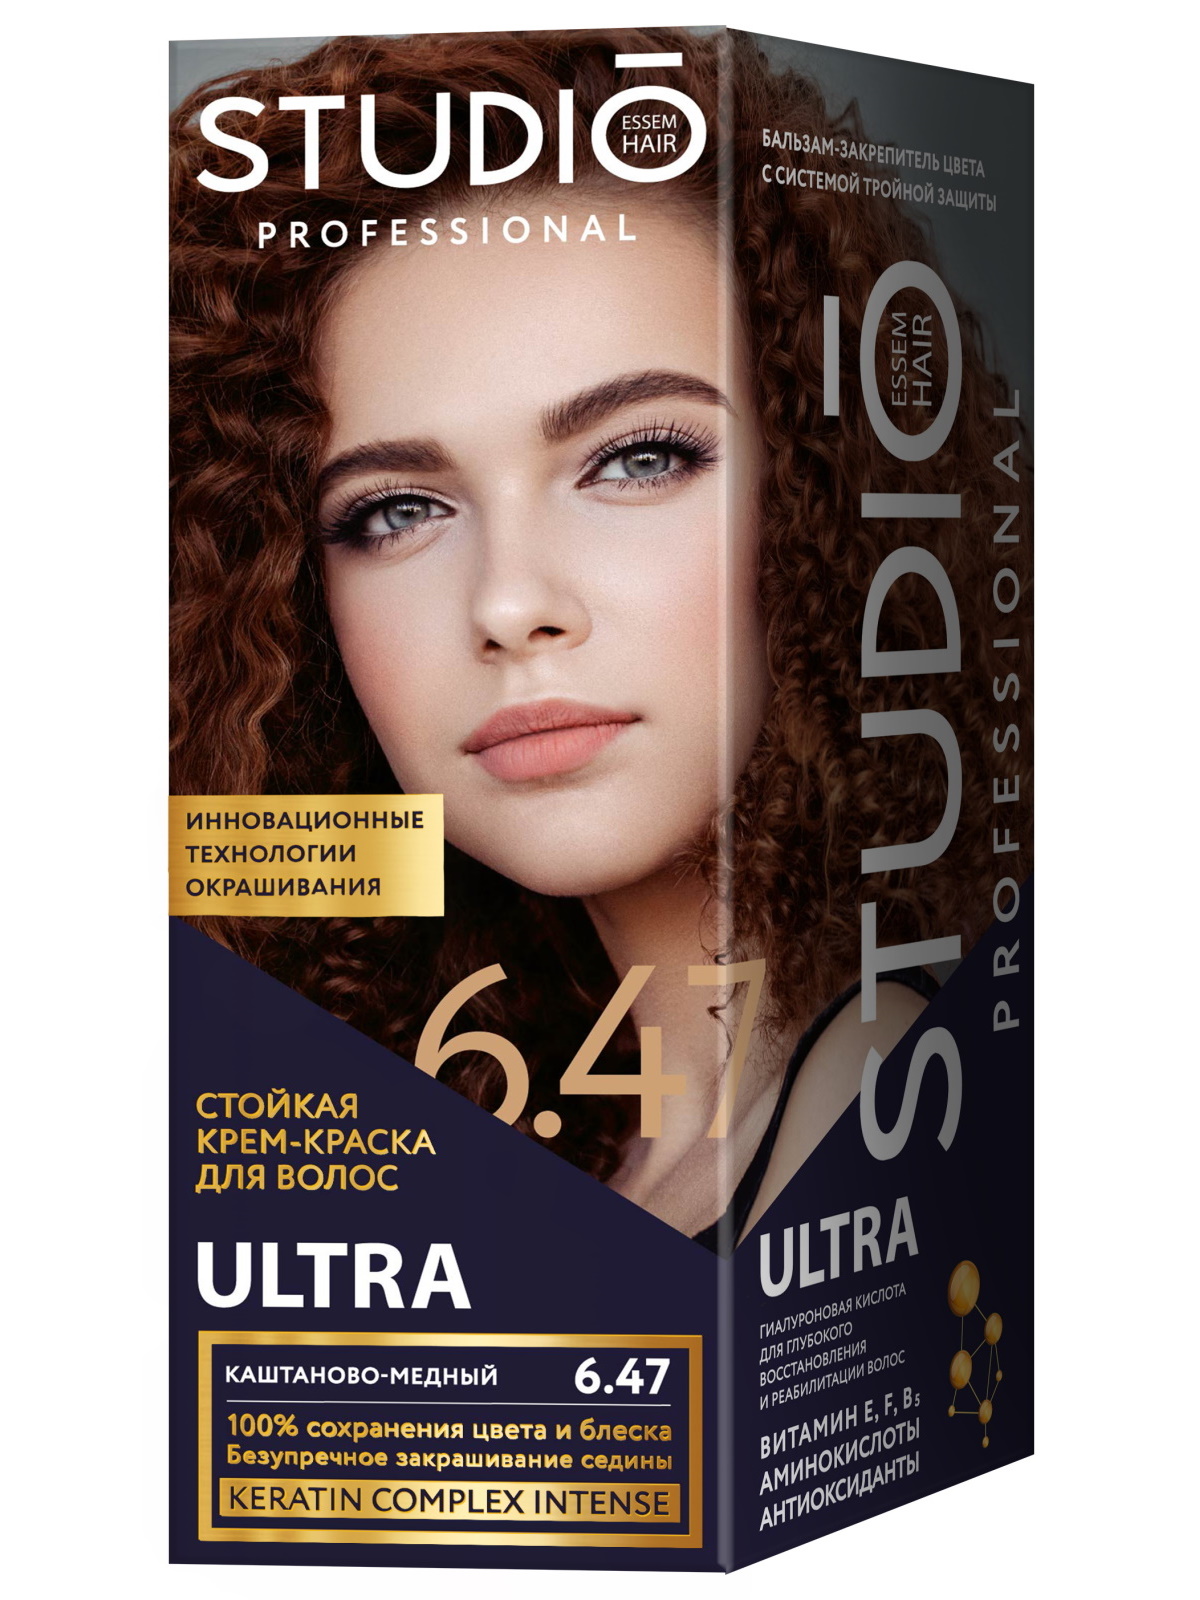 Купить Комплект ULTRA для окрашивания волос STUDIO PROFESSIONAL 6.47 каштаново-медный 2*50+15 мл